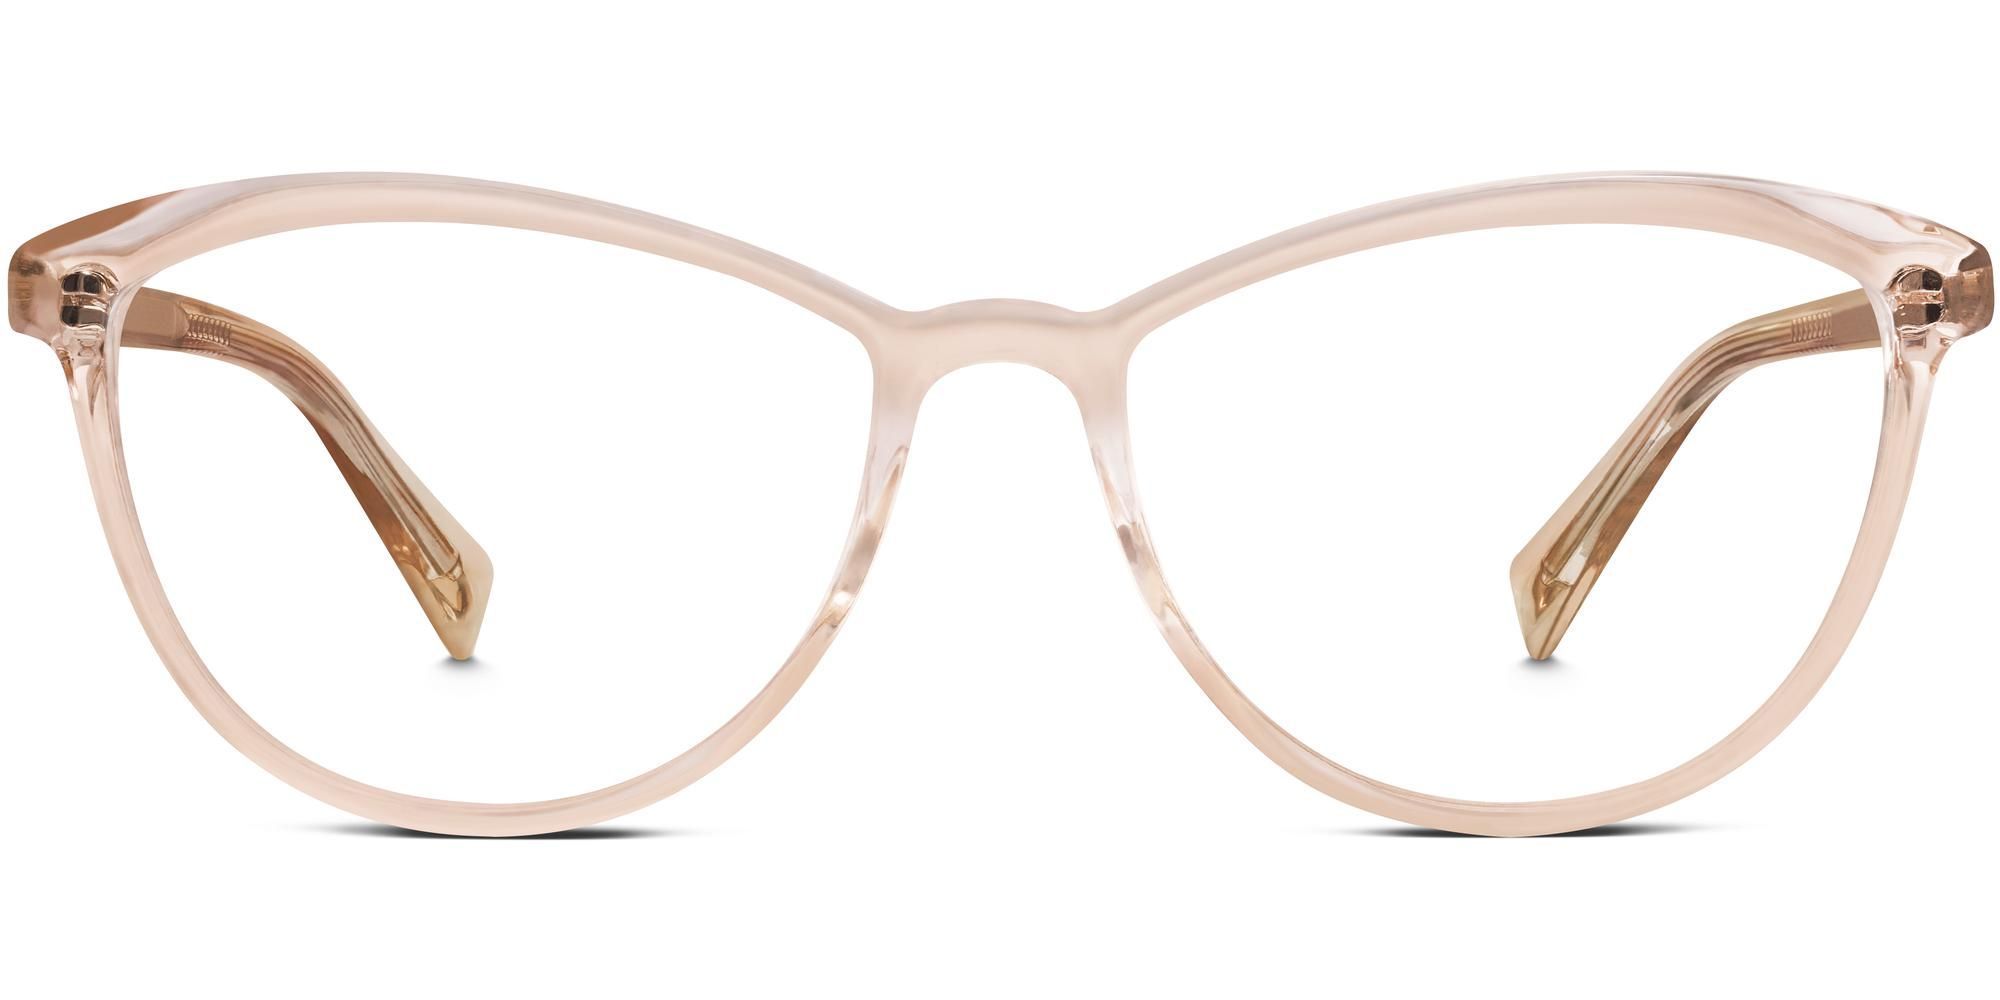 Louise Wide Eyeglasses in Elderflower Crystal for Women | Warby Parker